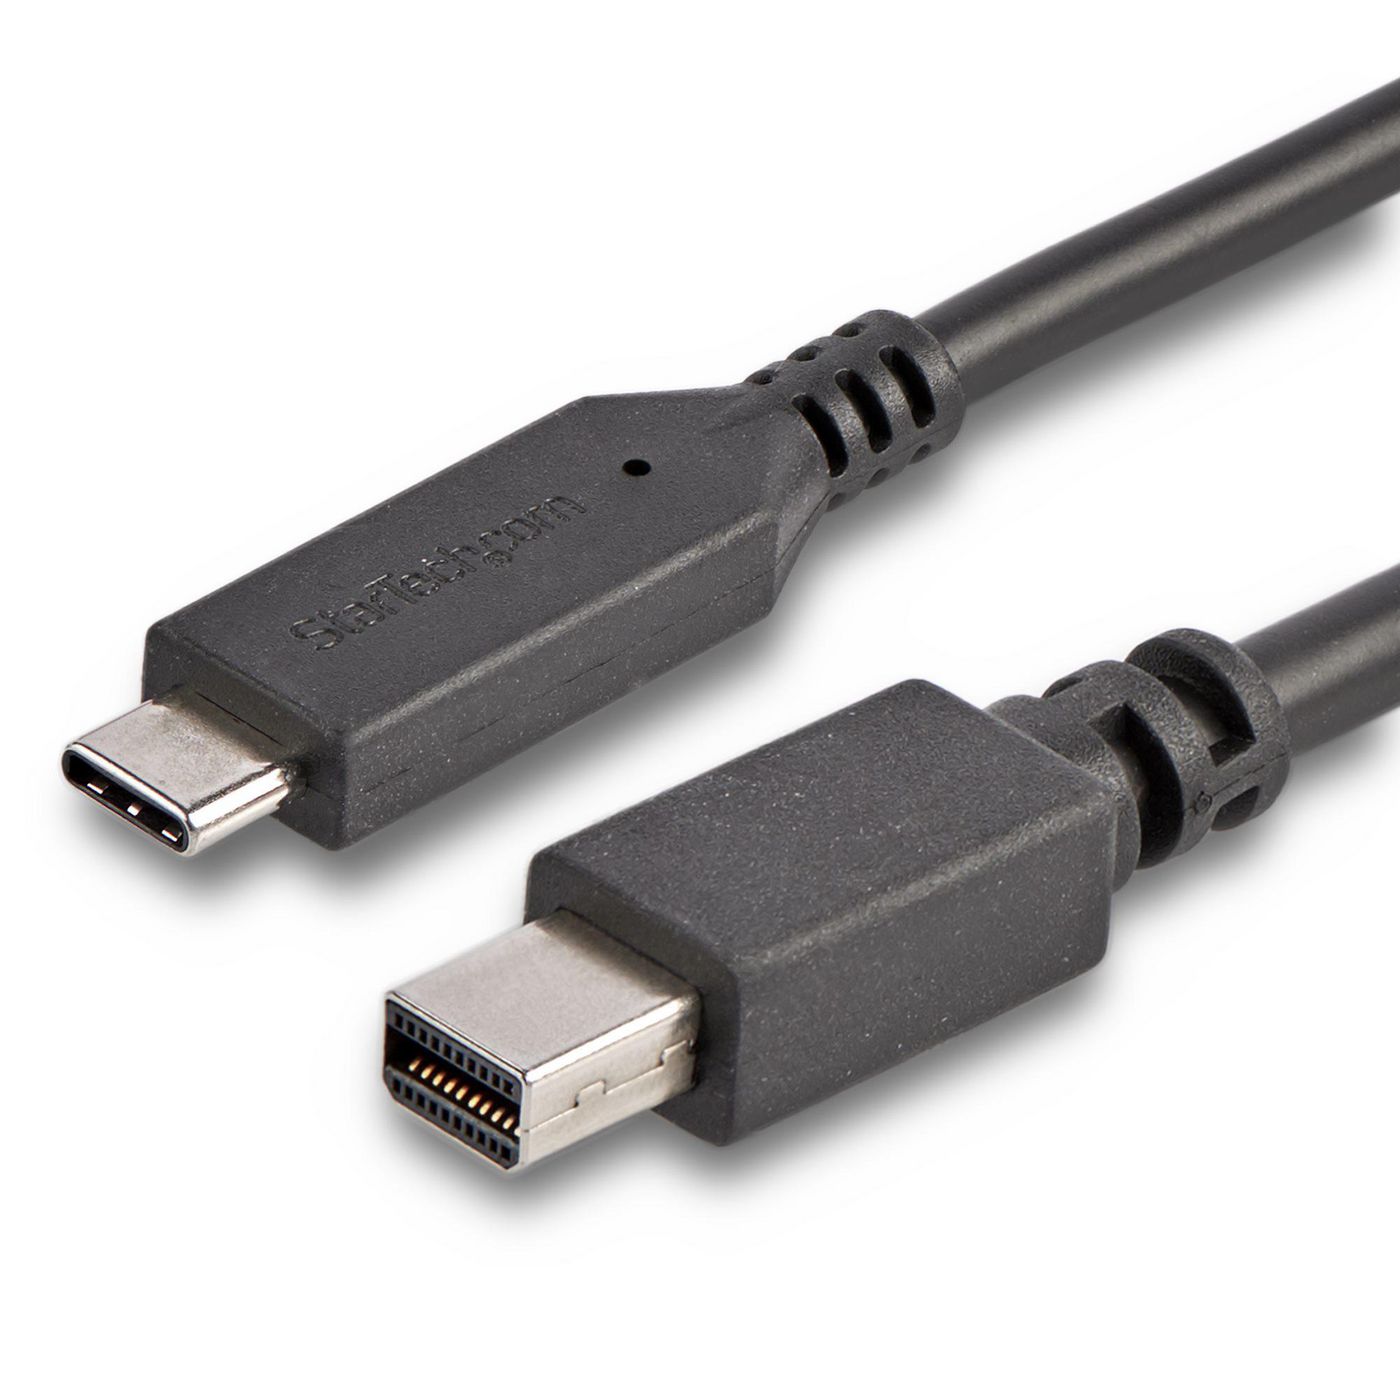 STARTECH.COM 1,8m USB-C auf Mini DisplayPort Kabel - USB C zu mDP Kabel - 4K 60Hz - Schwarz